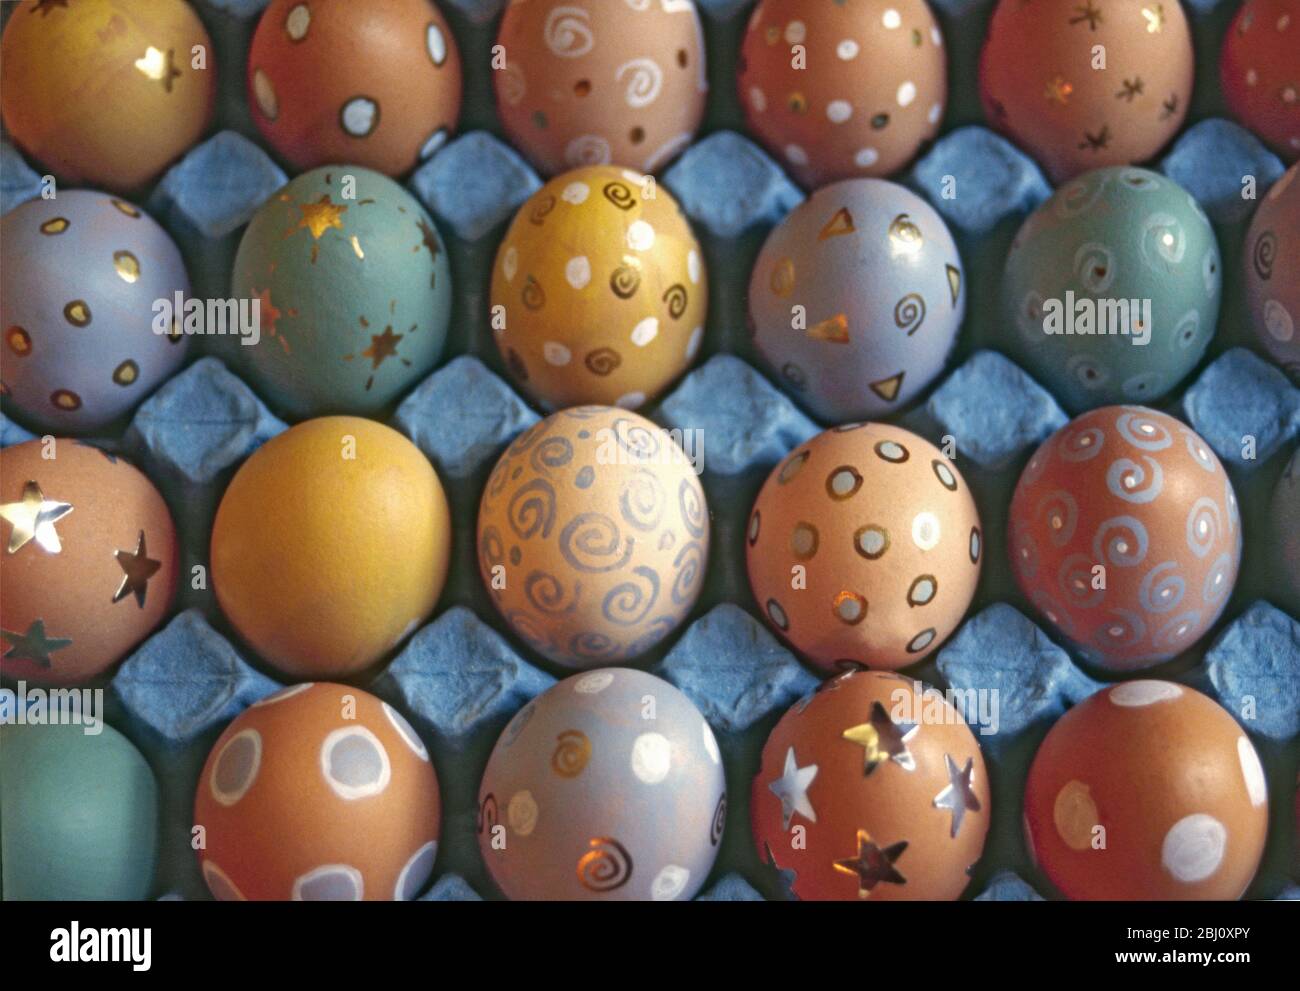 Eiertablett mit bemalten und dekorierten Eiern für ostern - Stockfoto